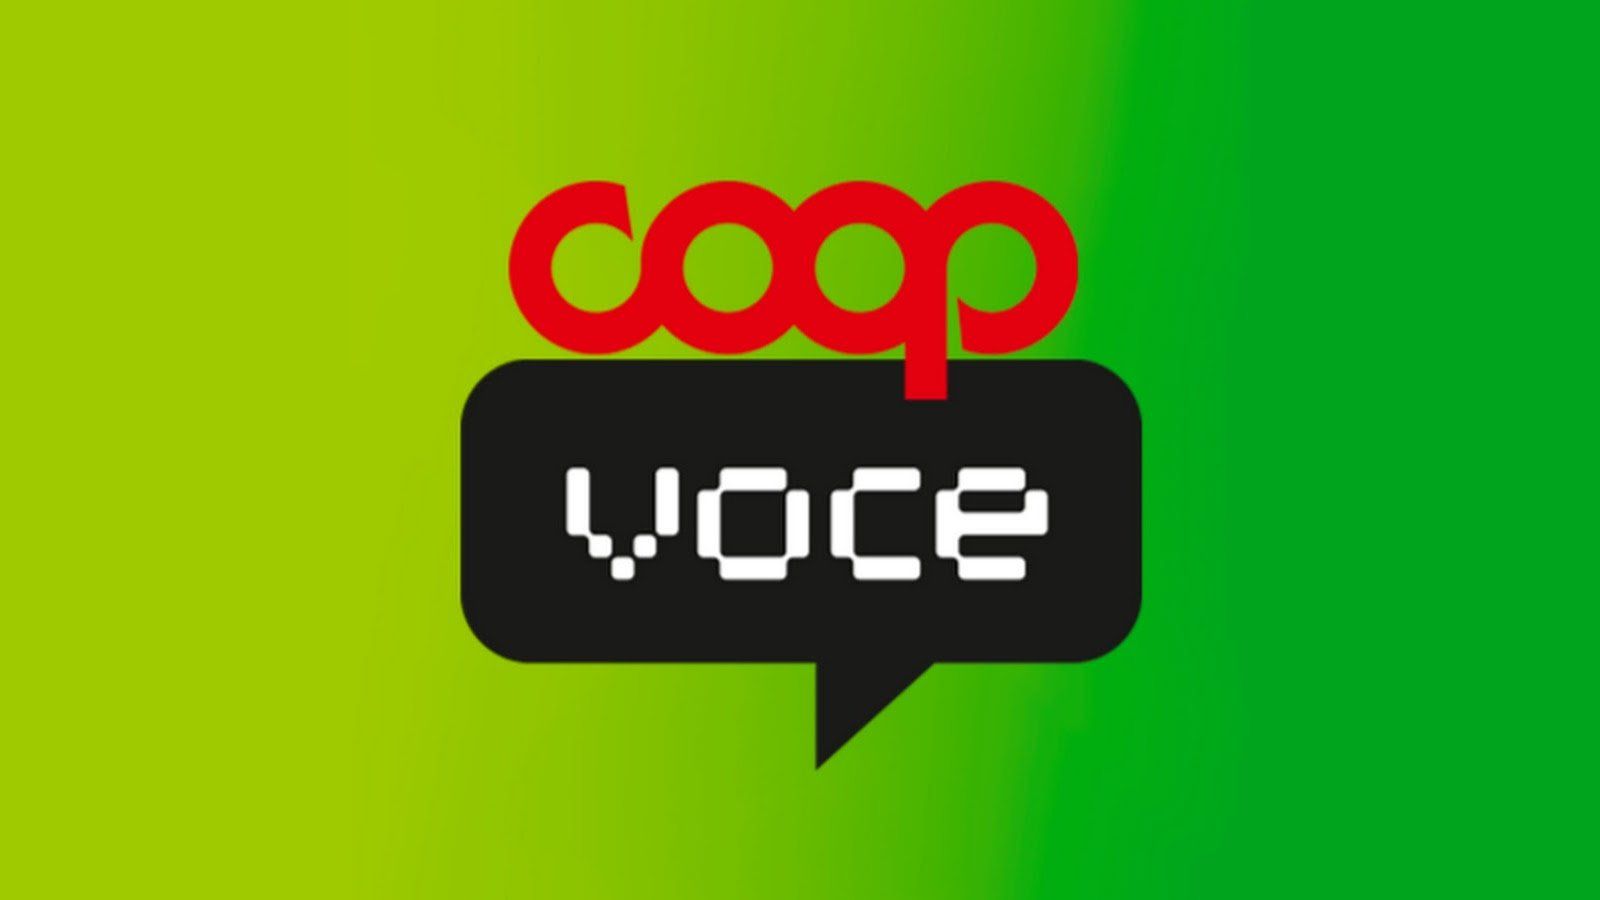 CoopVoce ruba utenti a Vodafone e TIM: nuova offerta da 3 euro e con 30 euro di regalo